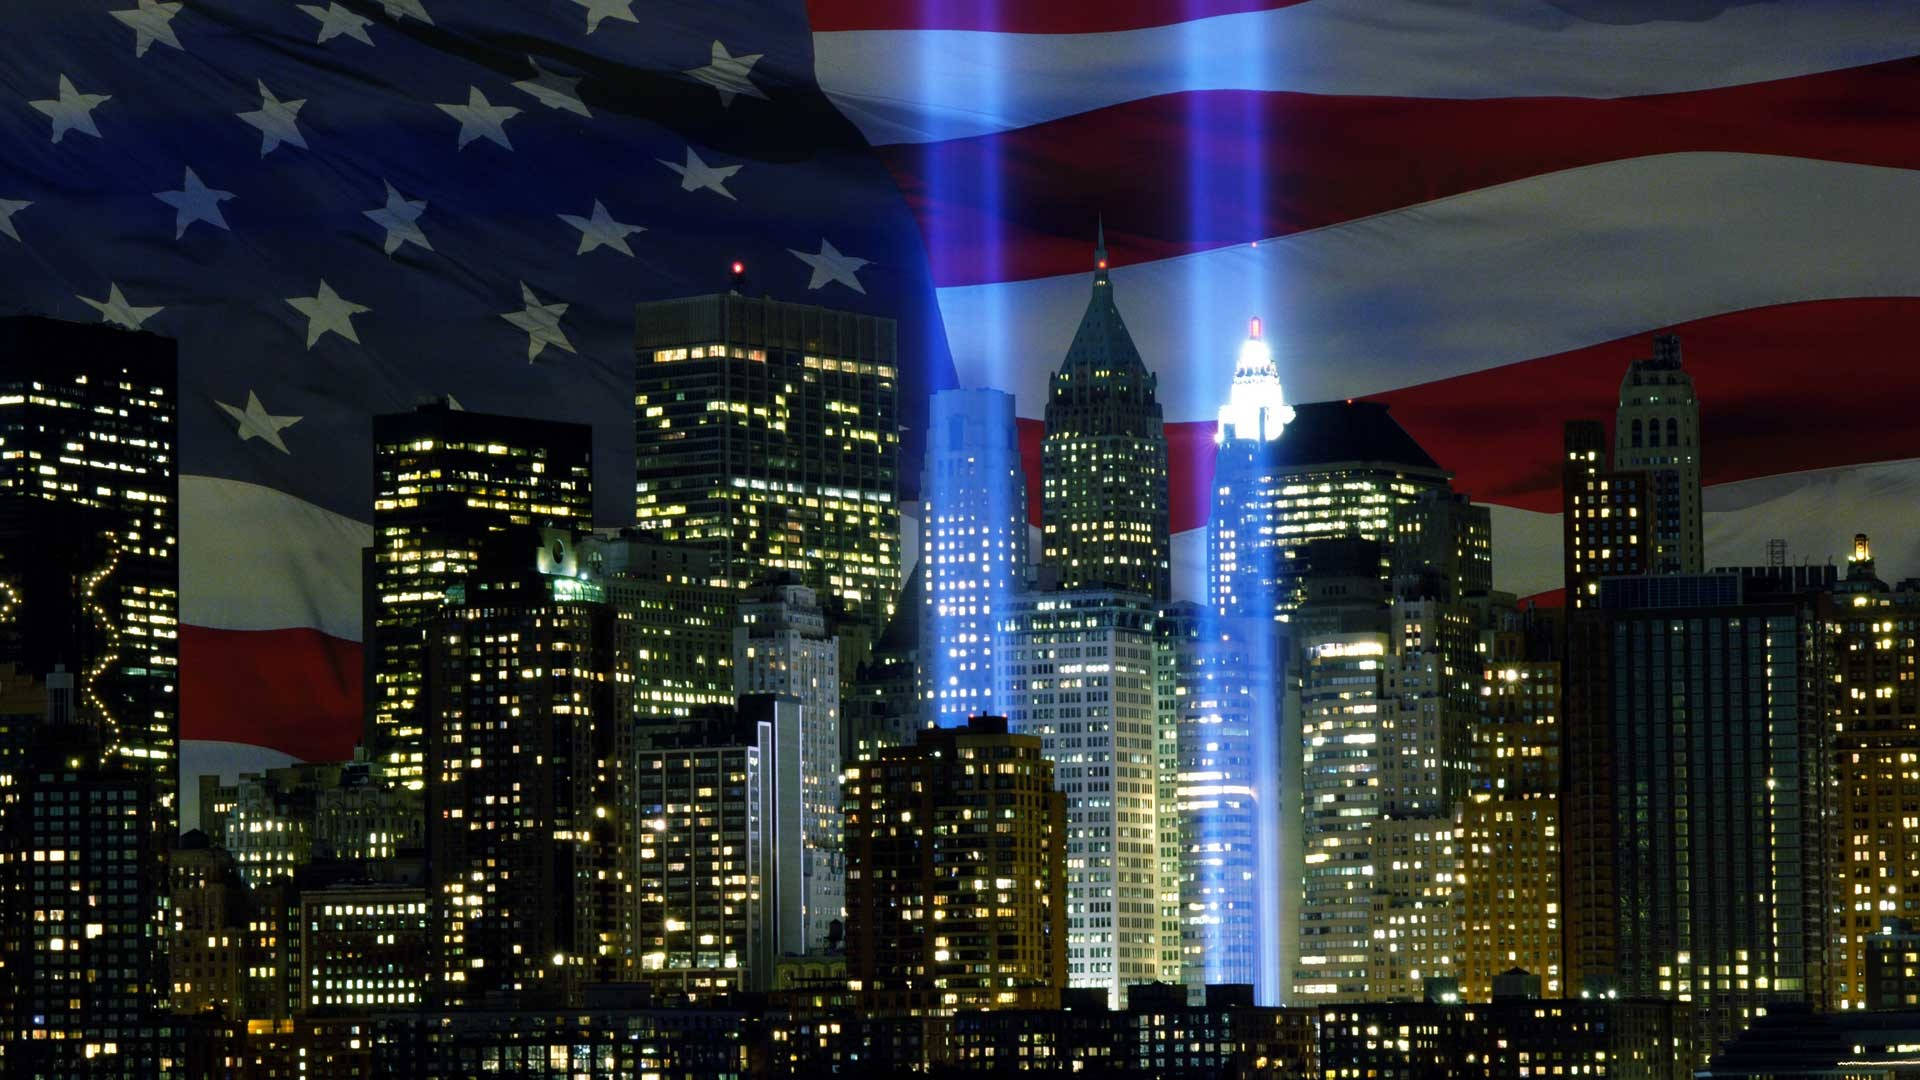 911 Memorial Tribute And Flag Wallpaper